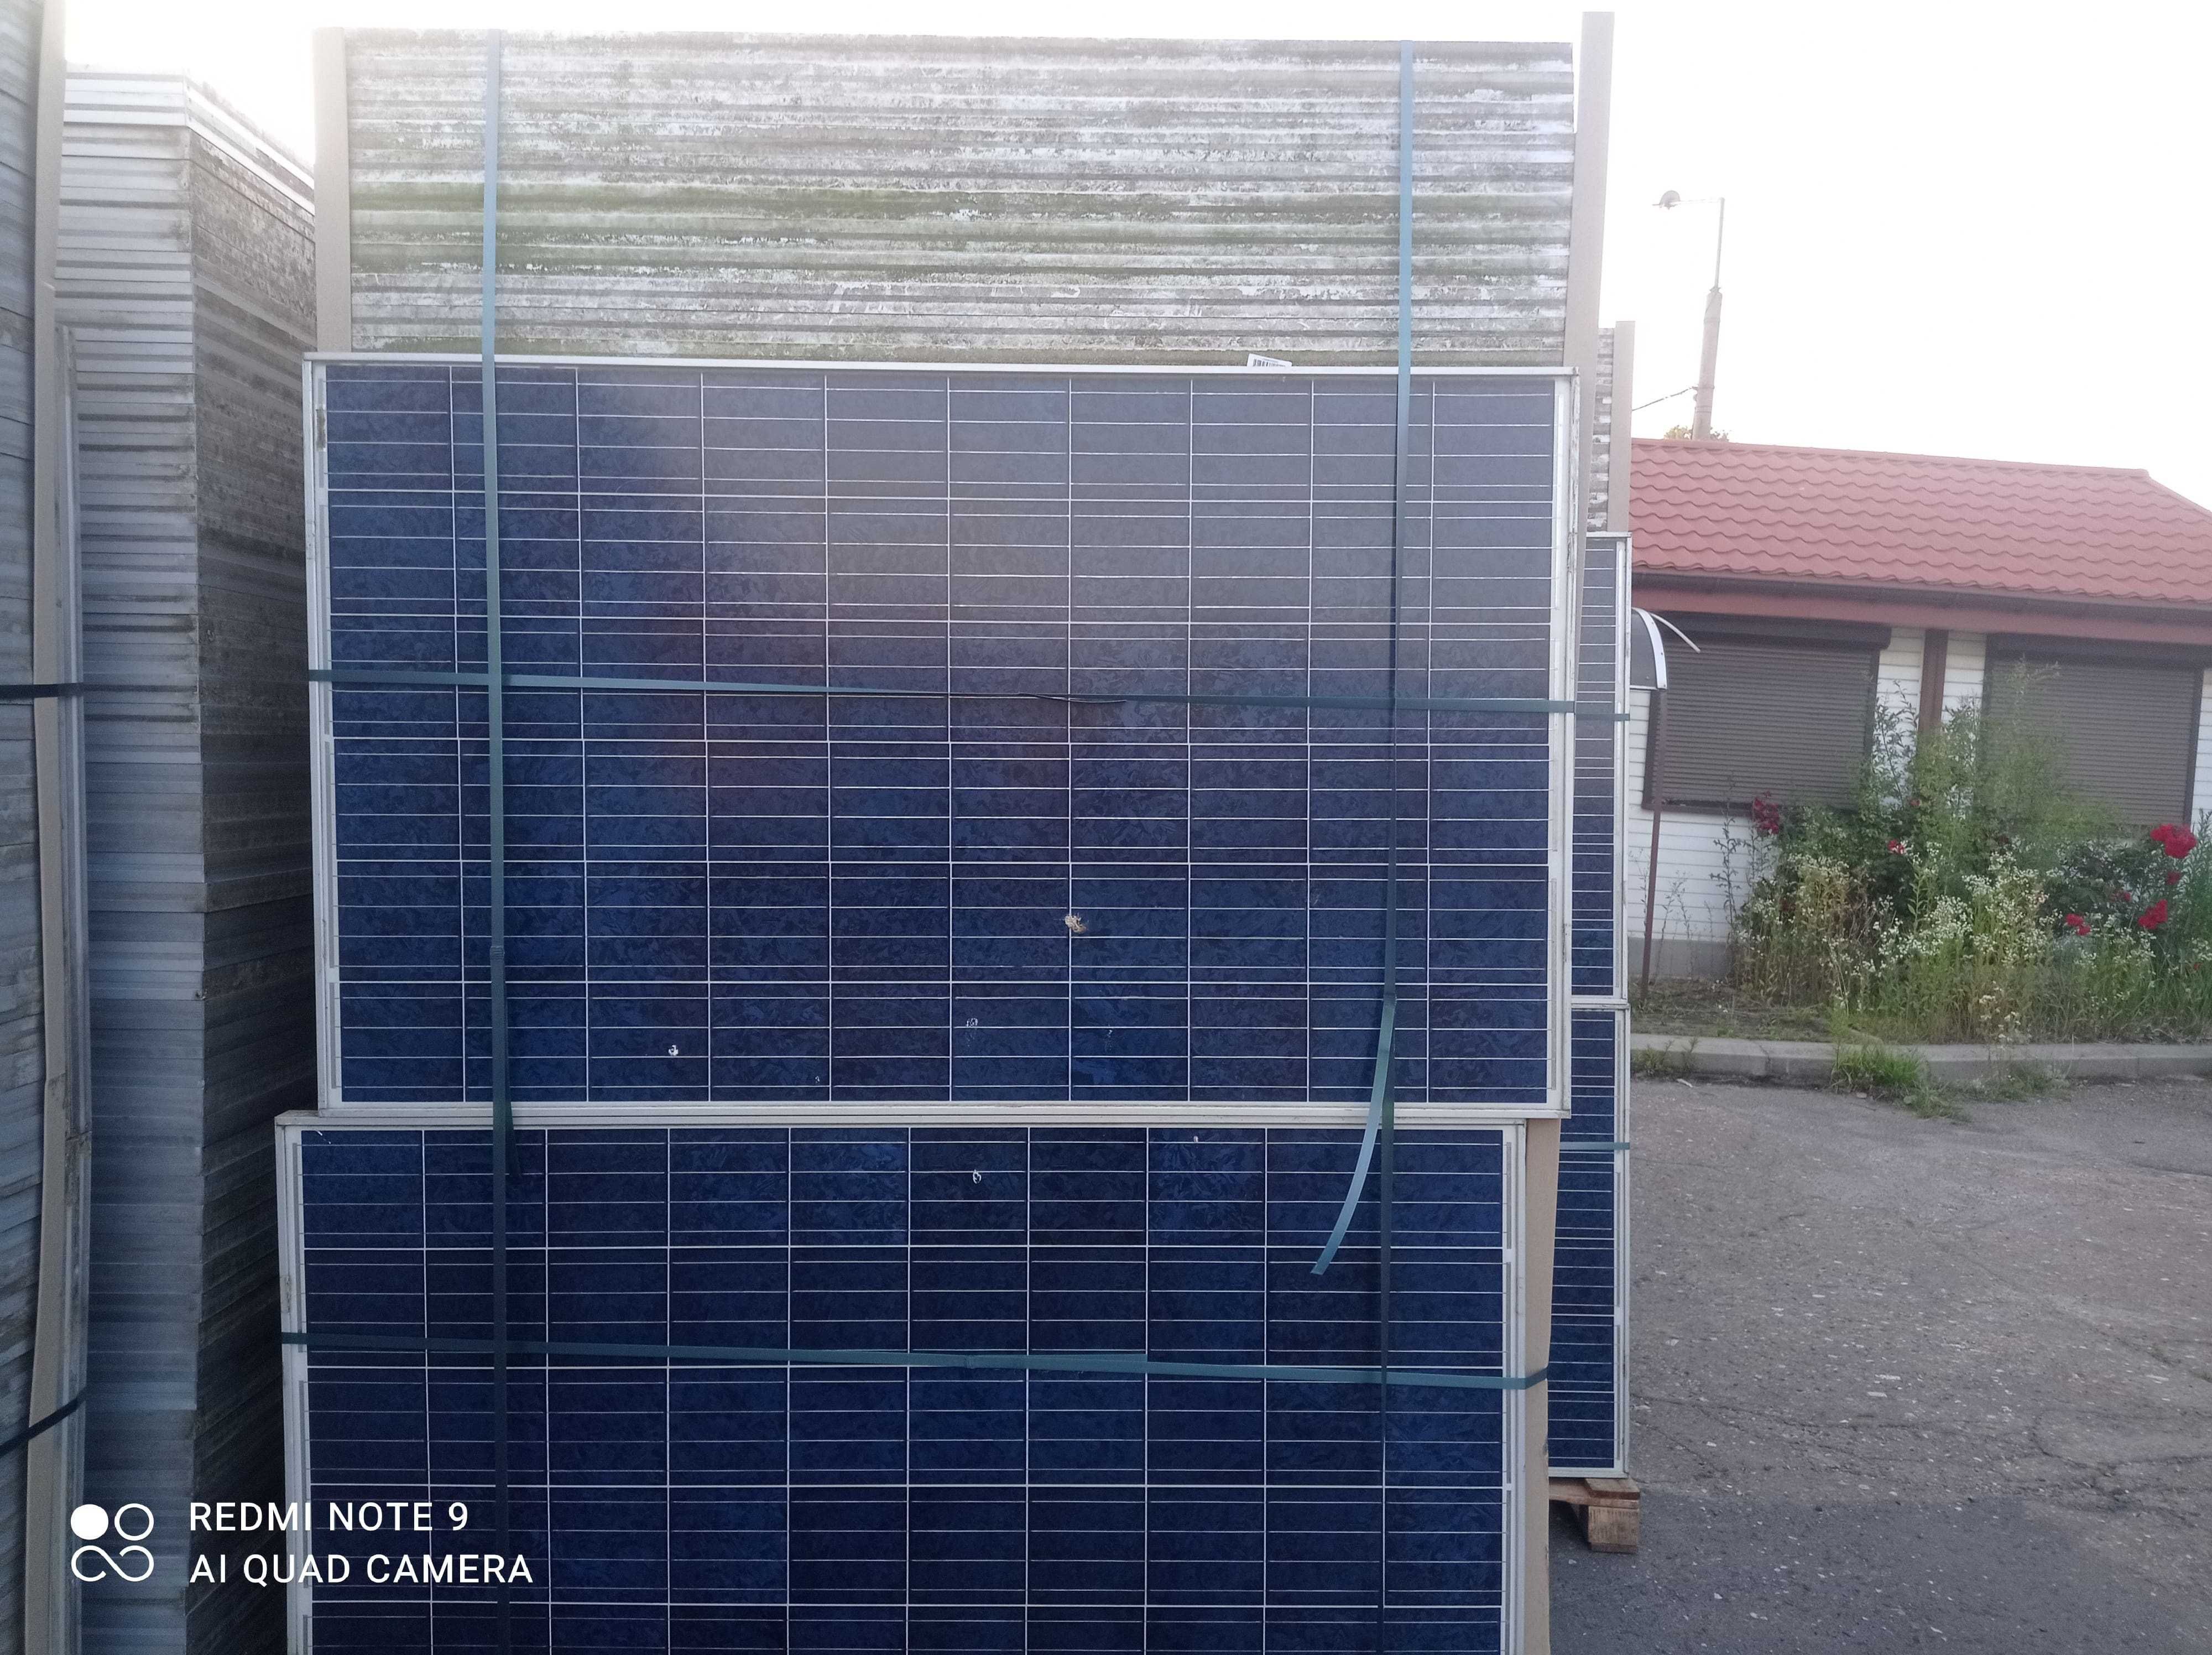 moduły słoneczne panele fotowoltaiczne 220-235W poly Canadian Solar